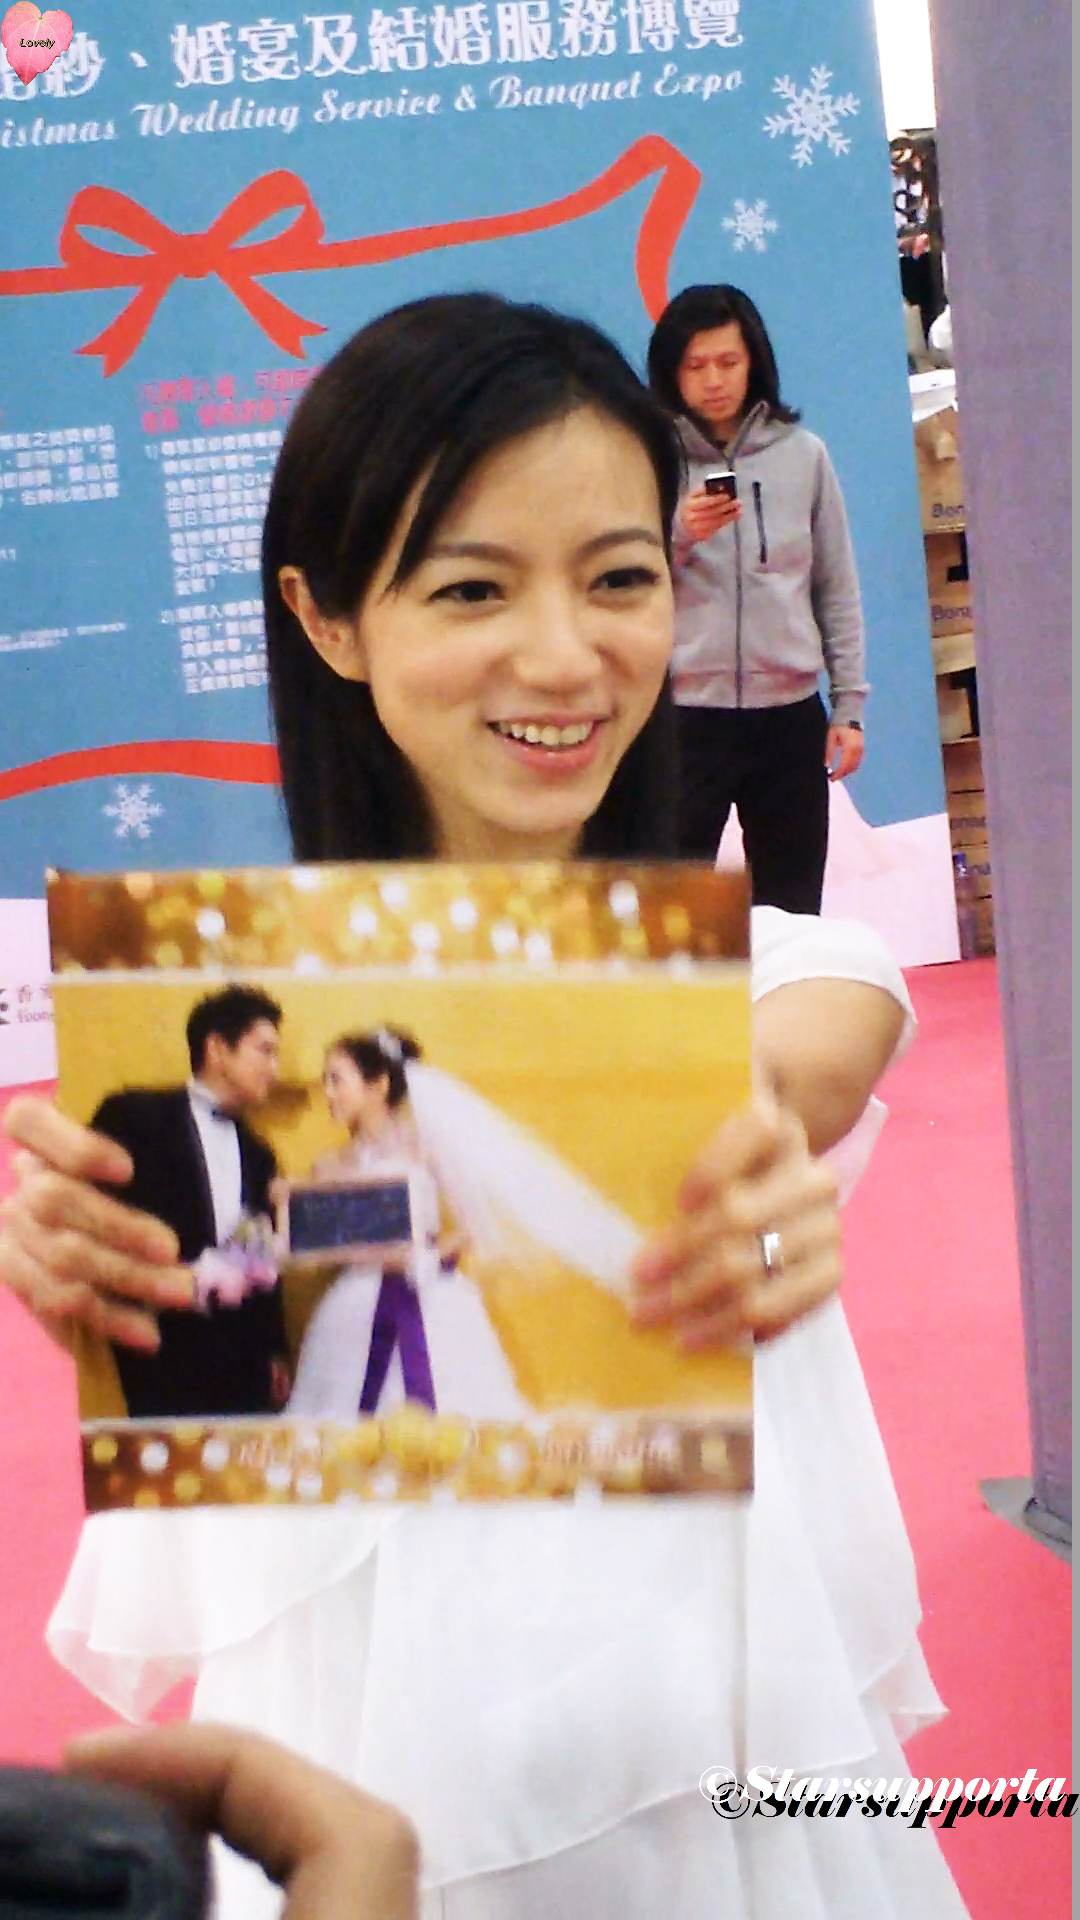 20111218 聖誔婚紗、婚宴及結婚服務博覽 - France Bridal: 李思欣 范振鋒 @ 香港會議展覽中心 HKCEC